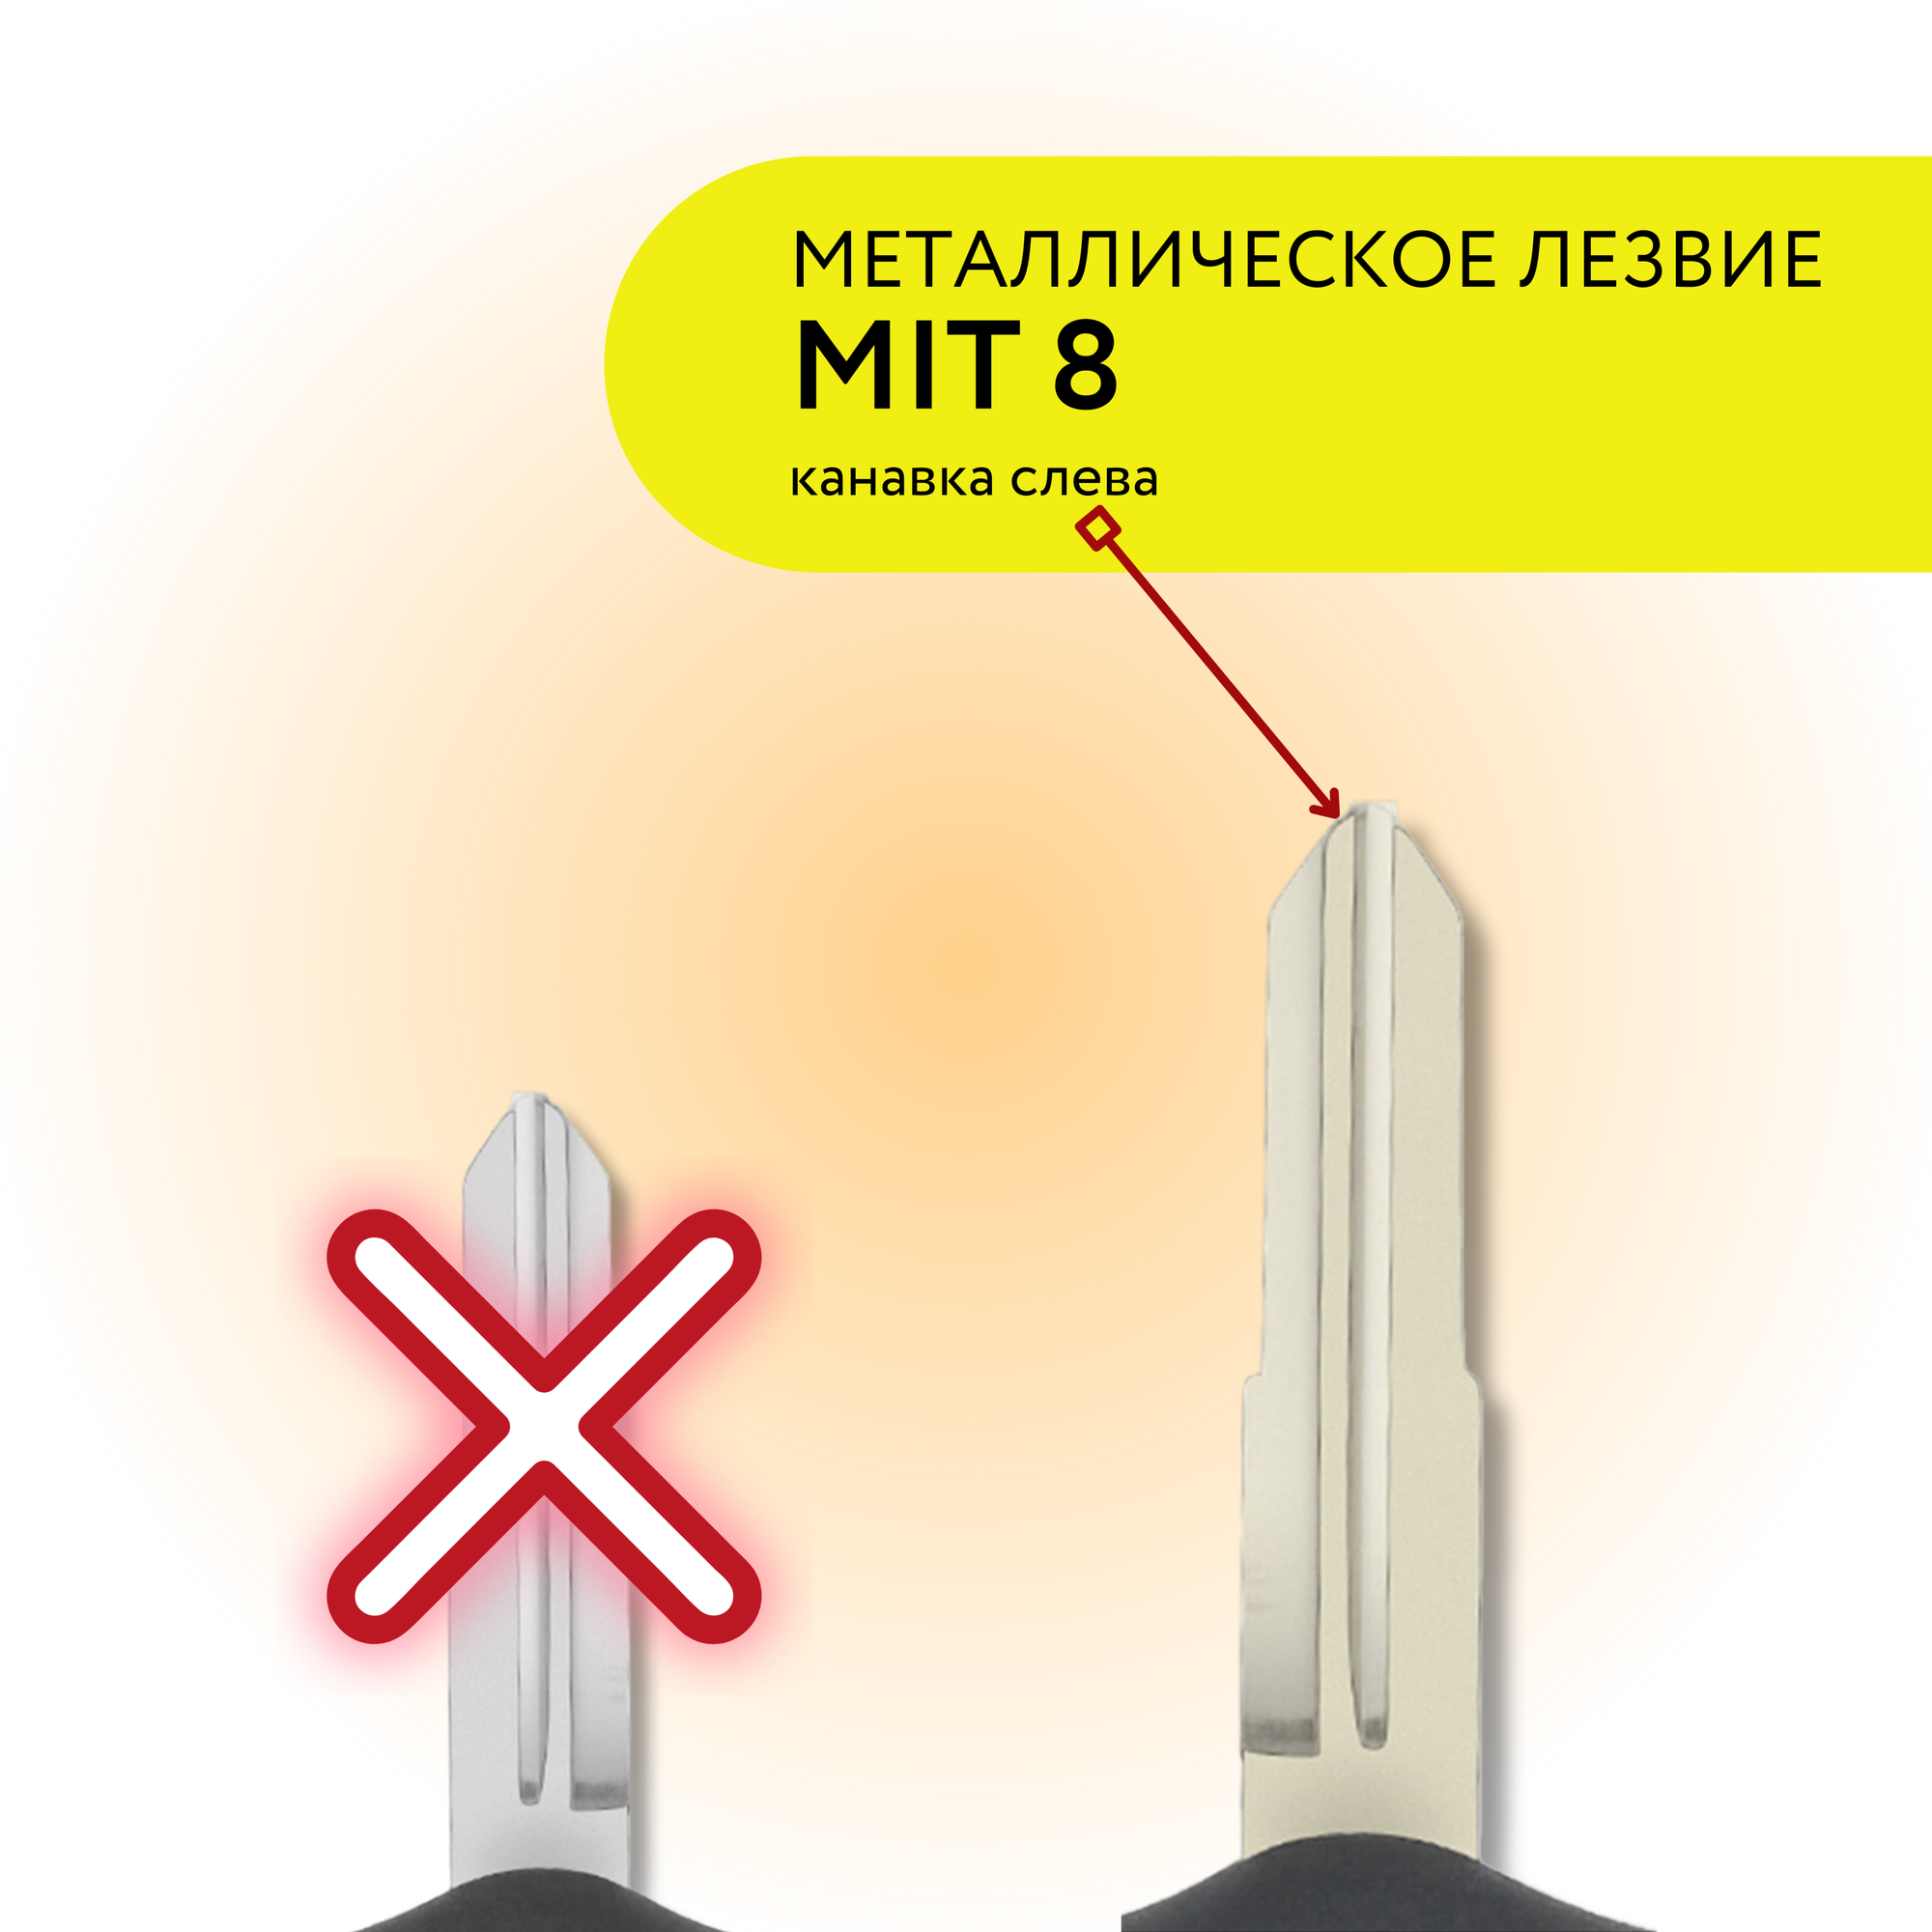 Корпус ключа зажигания для Мицубиси, Mitsubishi, лезвие MIT8, 2 кнопки